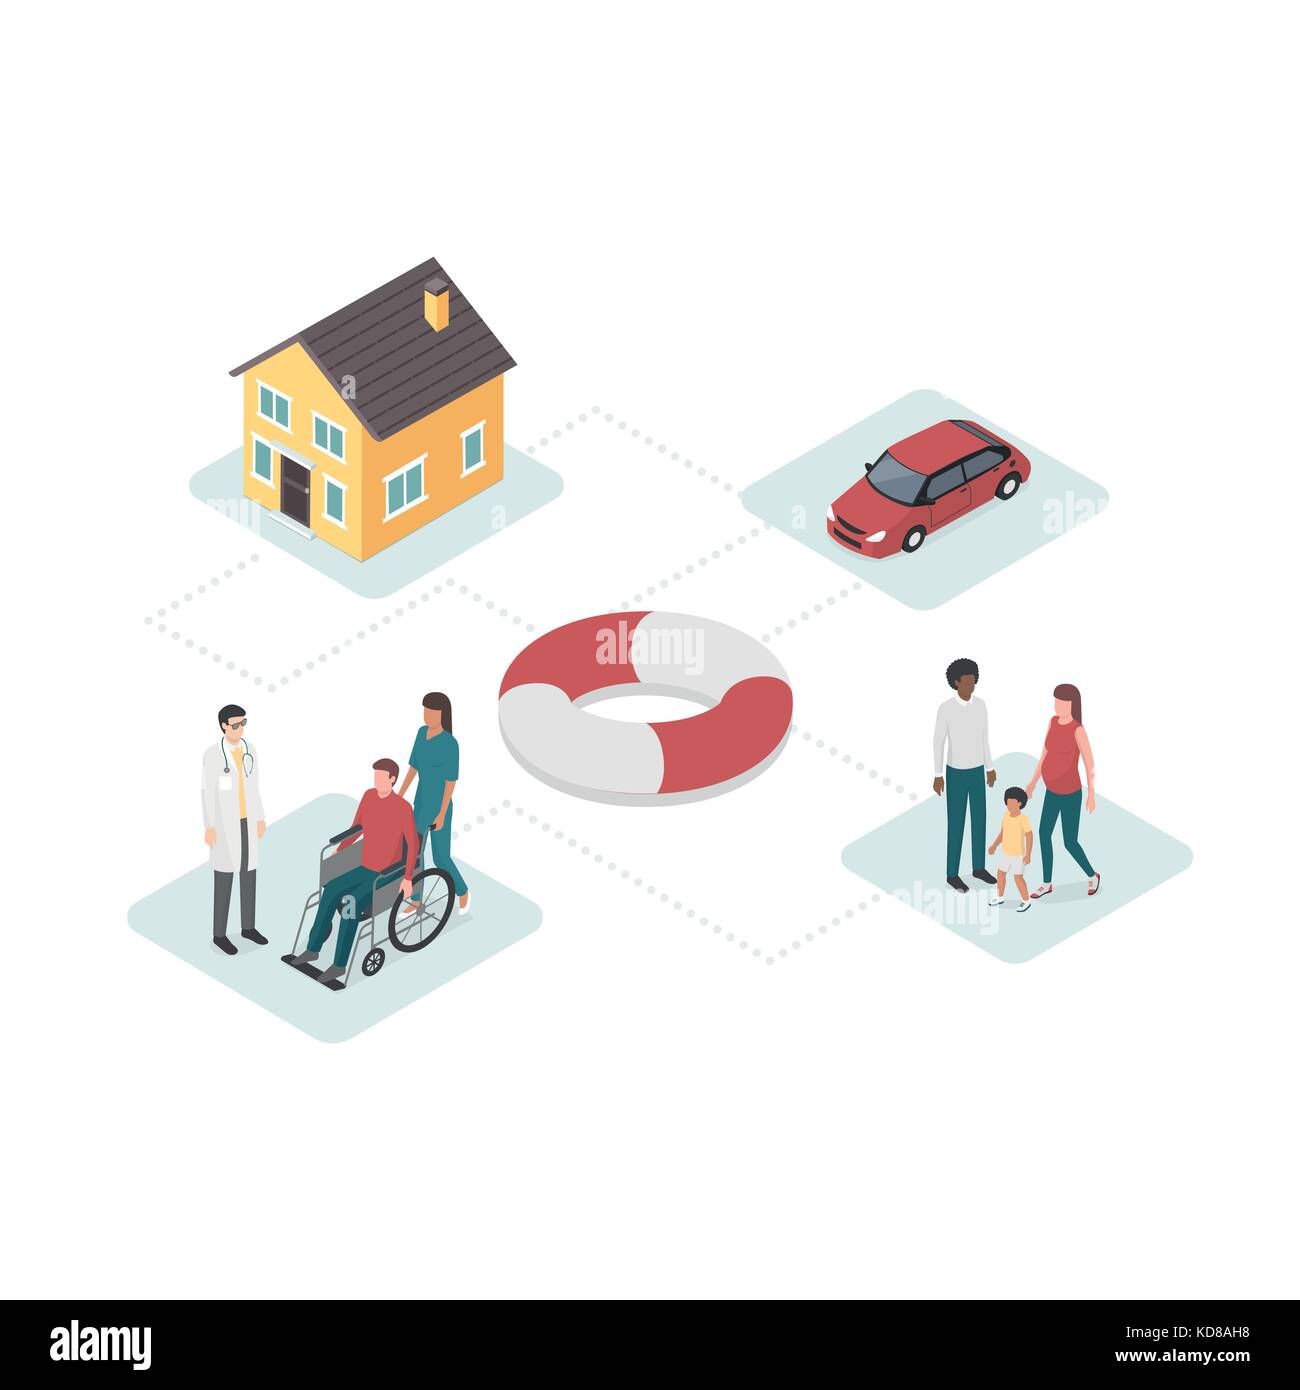 La casa, el coche, el plan de seguro de salud y familia con lifebelt en el centro: planes y servicios financieros concepto Ilustración del Vector